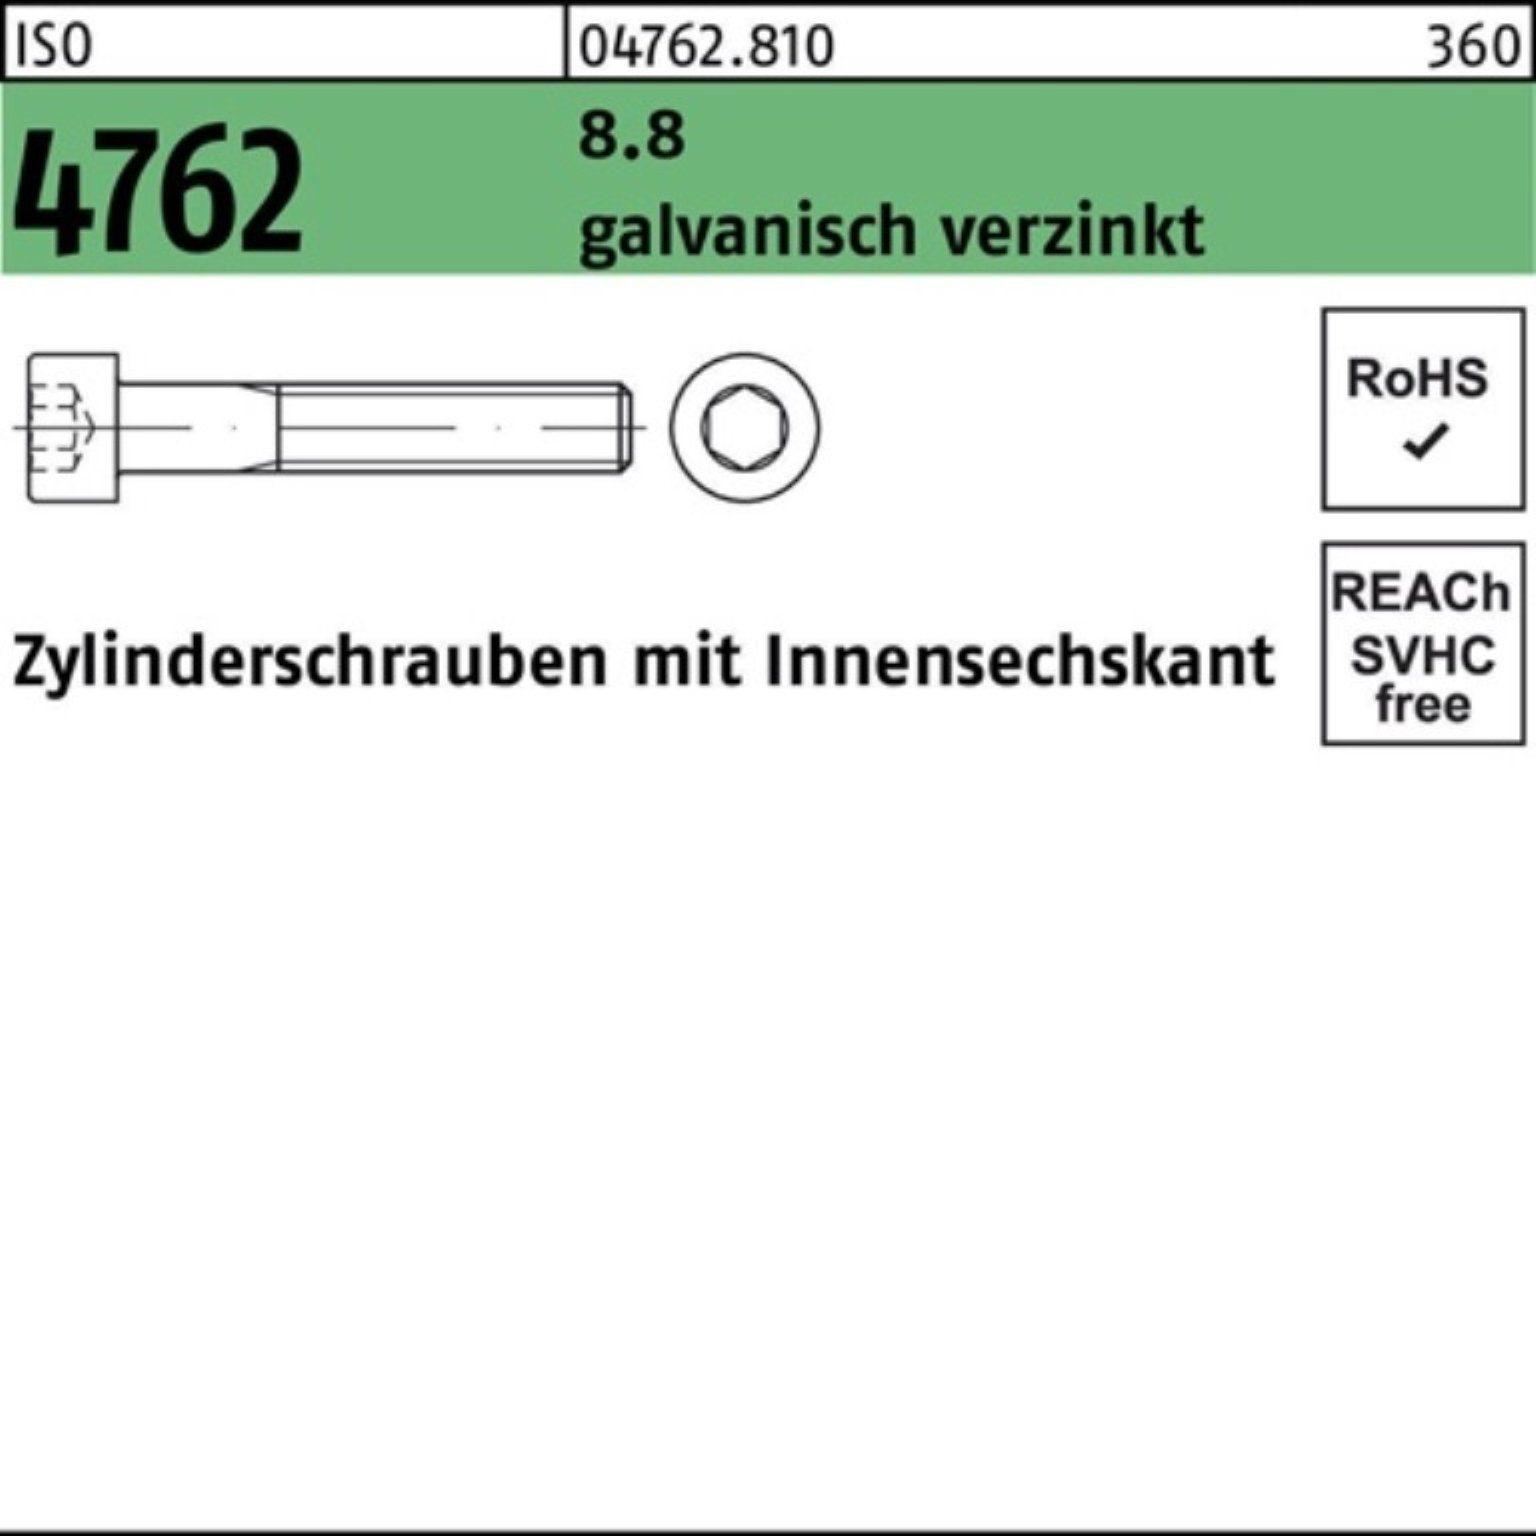 Zylinderschraube 100er 10 Pack galv.verz. 4762 ISO Zylinderschraube M4x10 Innen-6kt Reyher 8.8